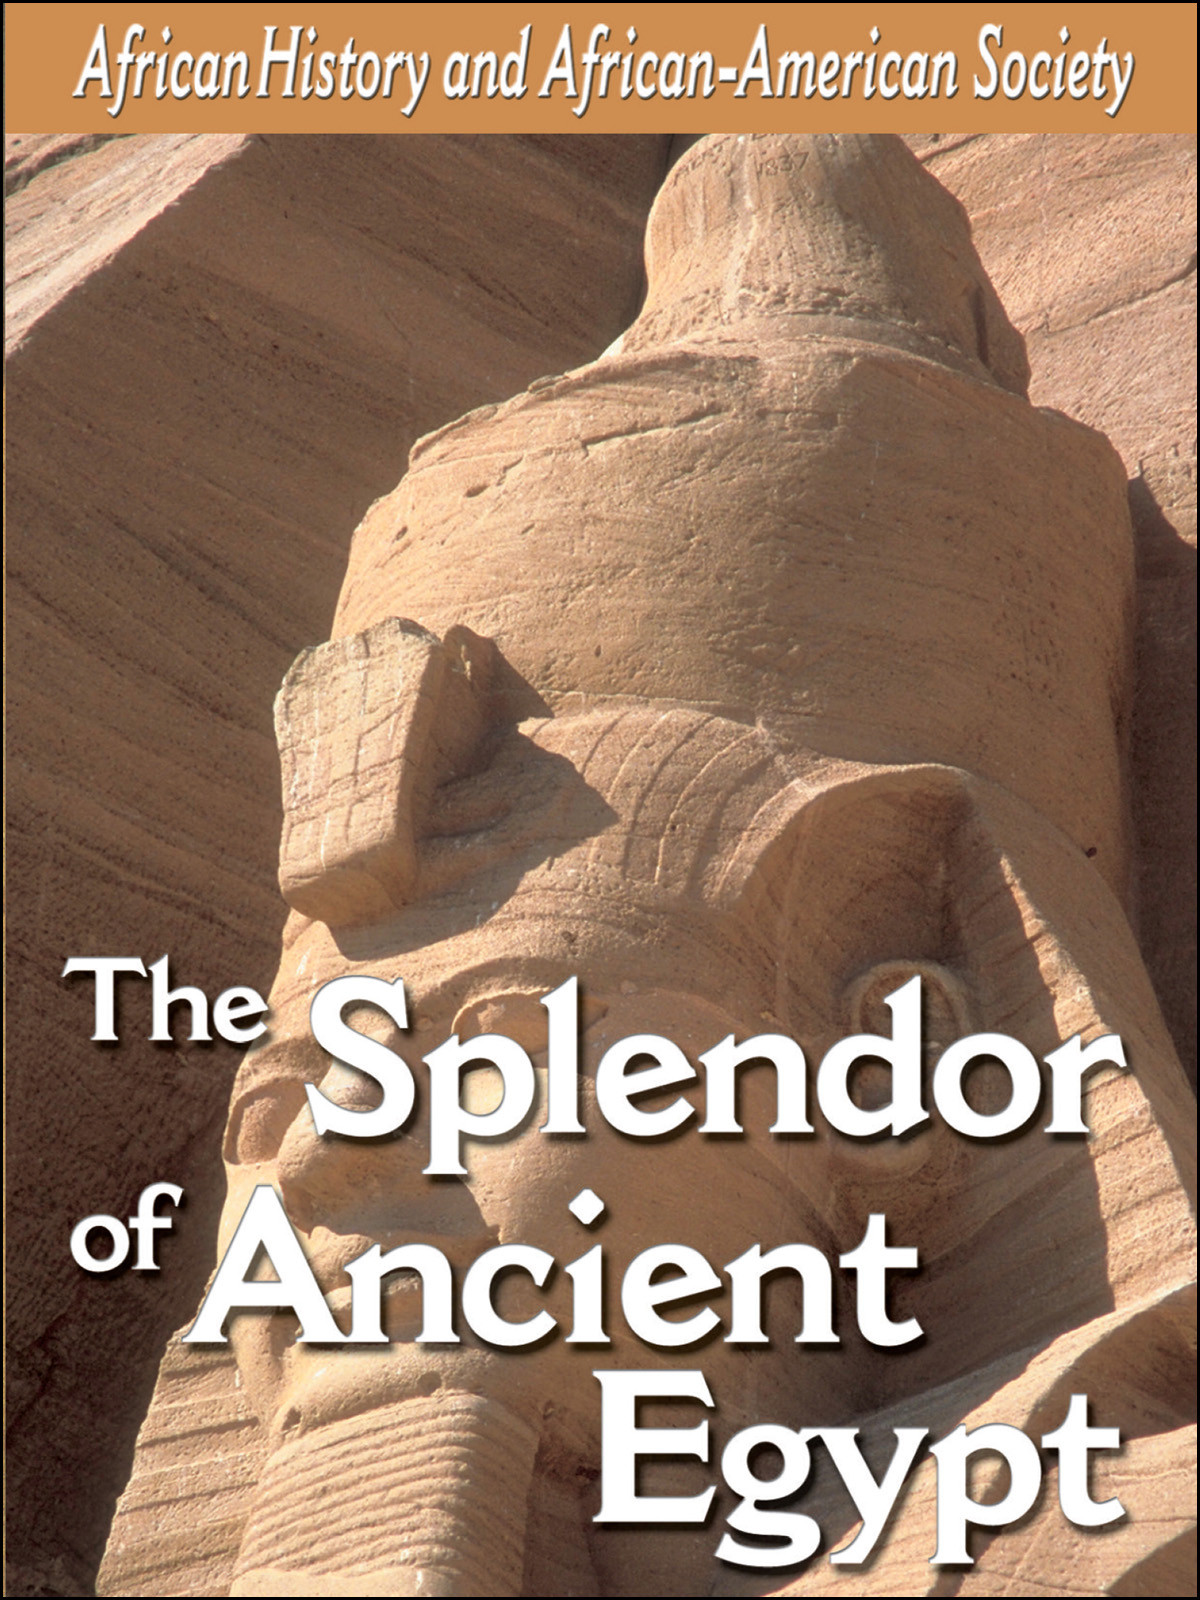 L903 - Explore Ancient Egypt